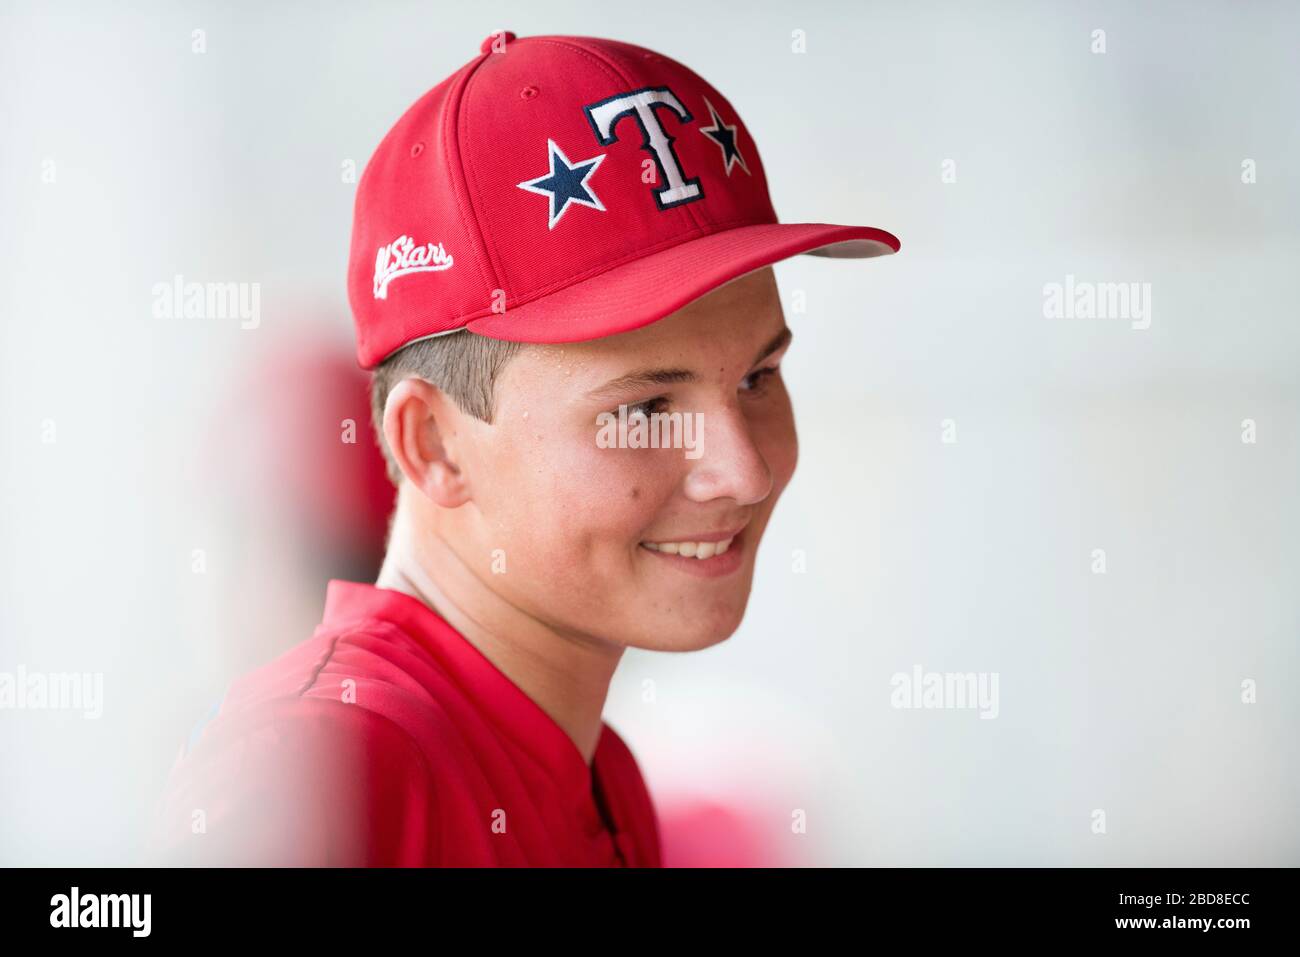 Retrato de primer plano de un jugador adolescente de béisbol con gorro rojo y uniforme Foto de stock